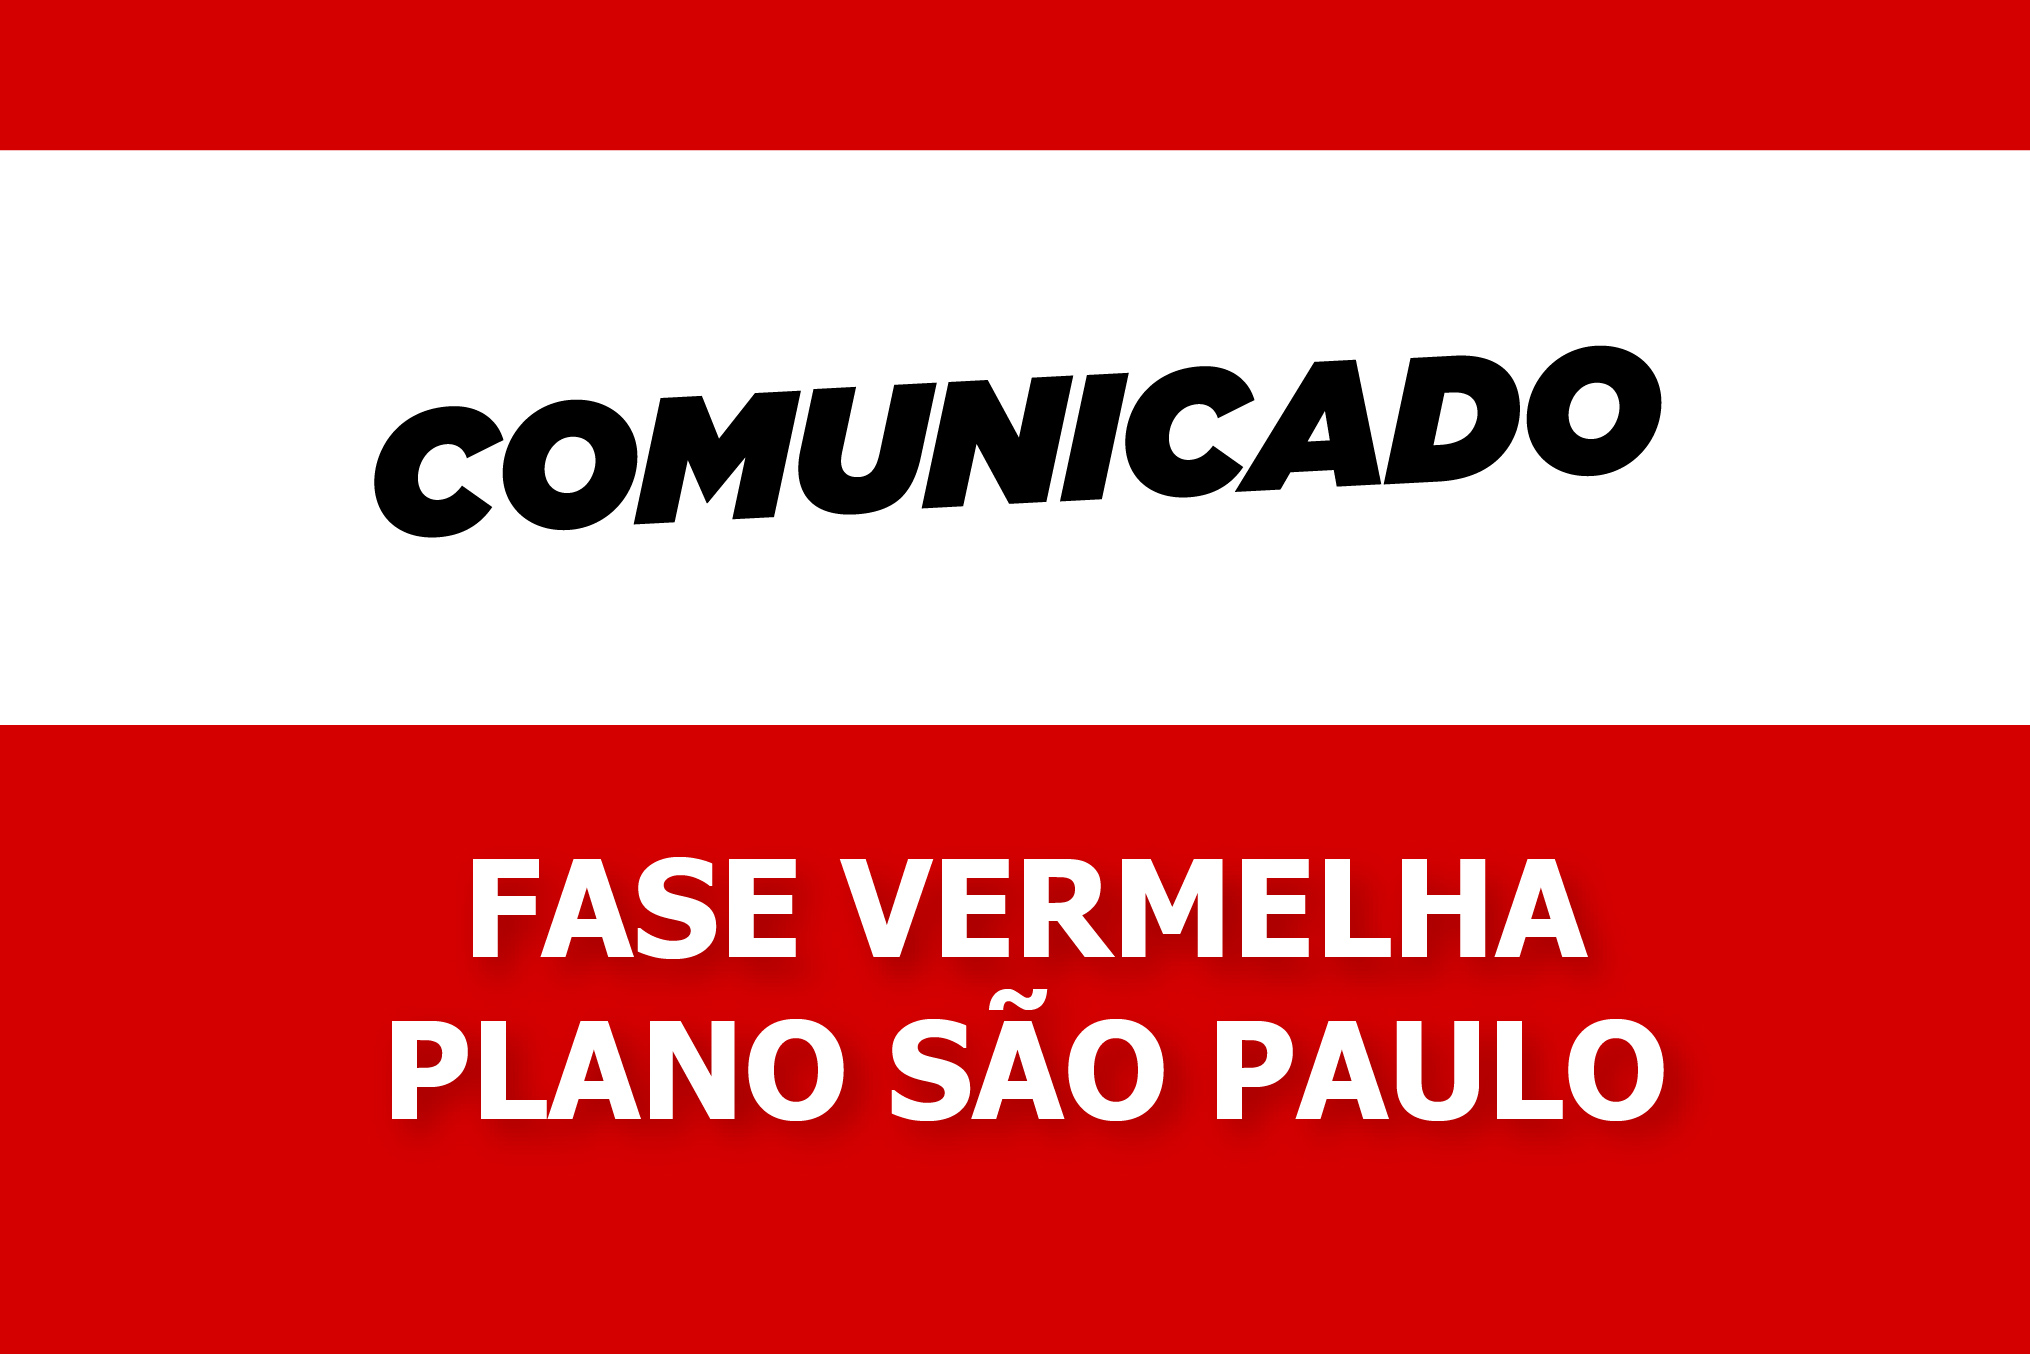 Sindicato dos Metalúrgicos vai seguir determinações do Plano São Paulo